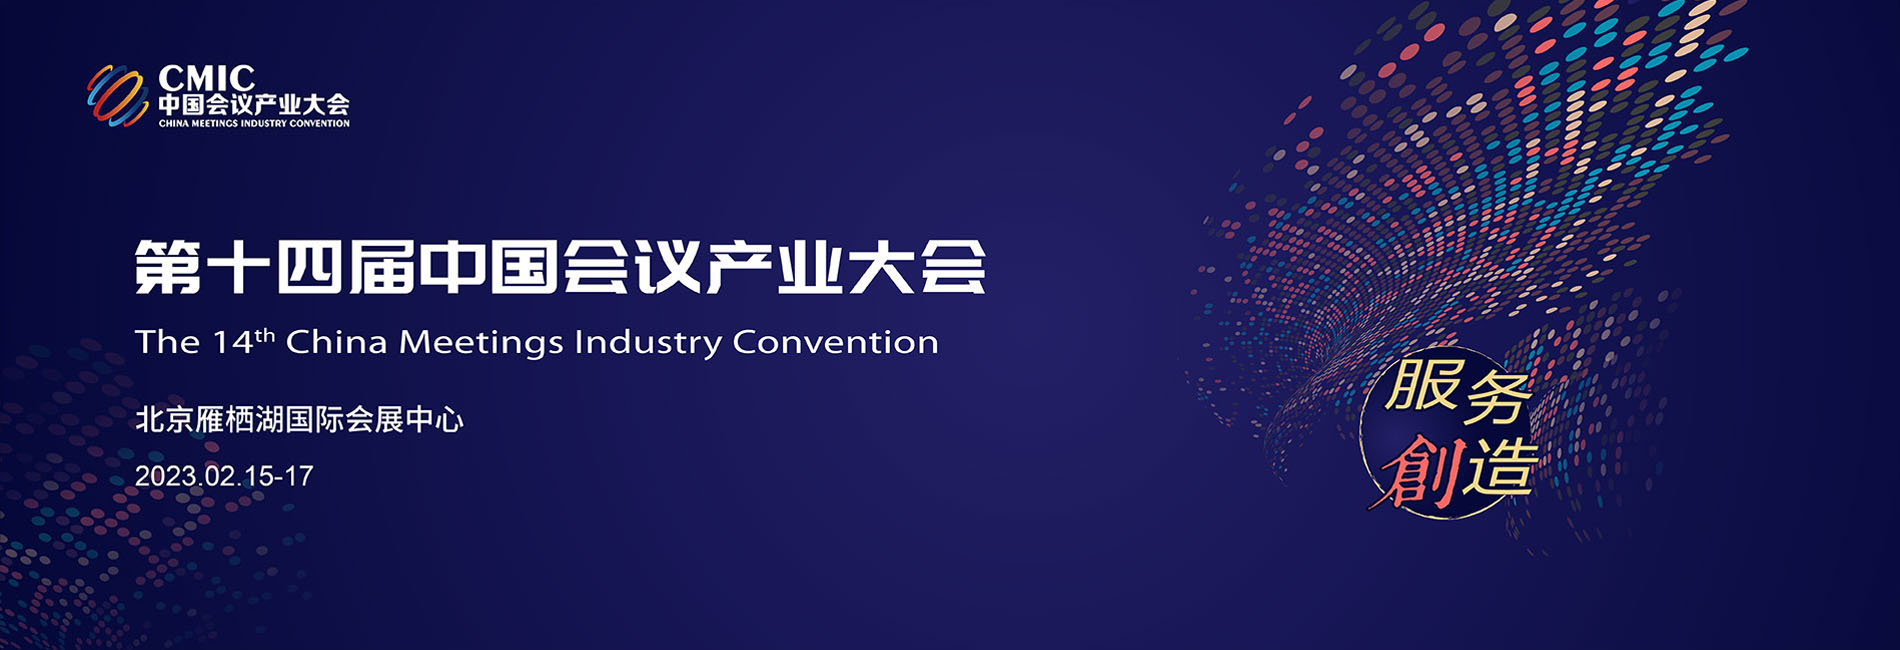 第十四届中国会议产业大会（Cmic2021）